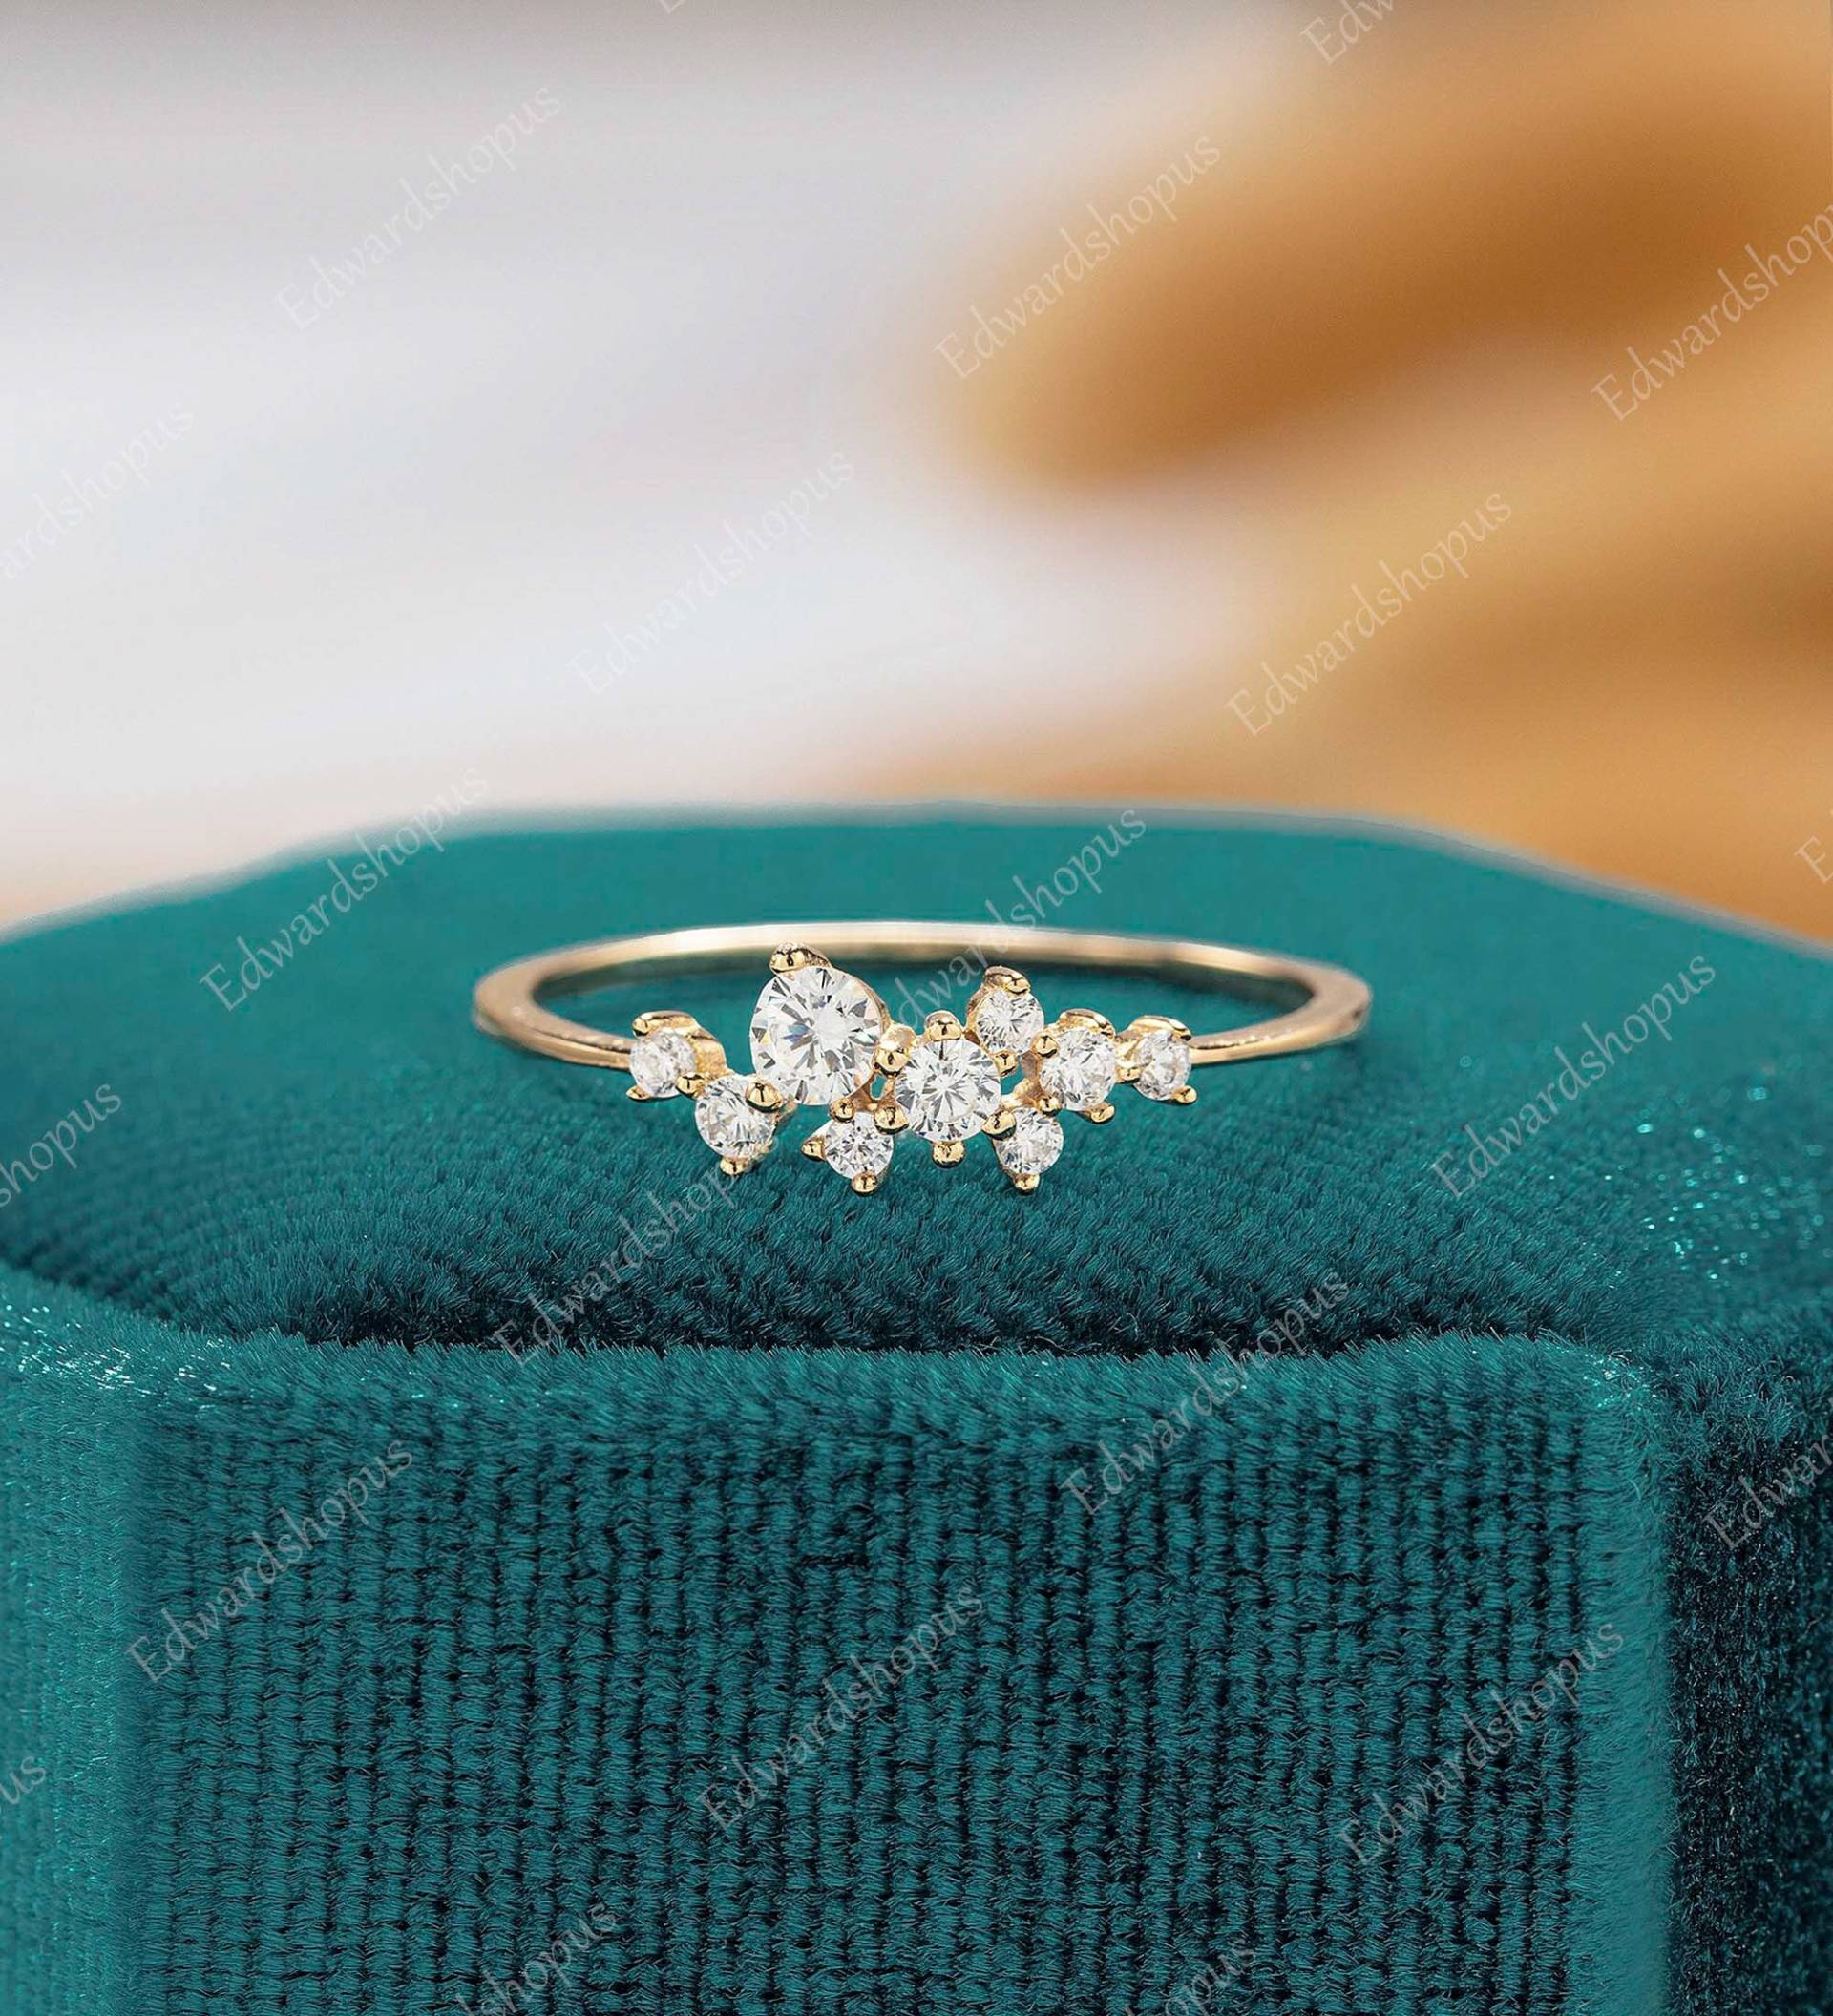 Moissanit Verlobungsring Vintage Frauen Cluster Gelbgold Winzig Ring Diamant Ehering Braut Jubiläum Unikat Art Deco von Edwardshopus